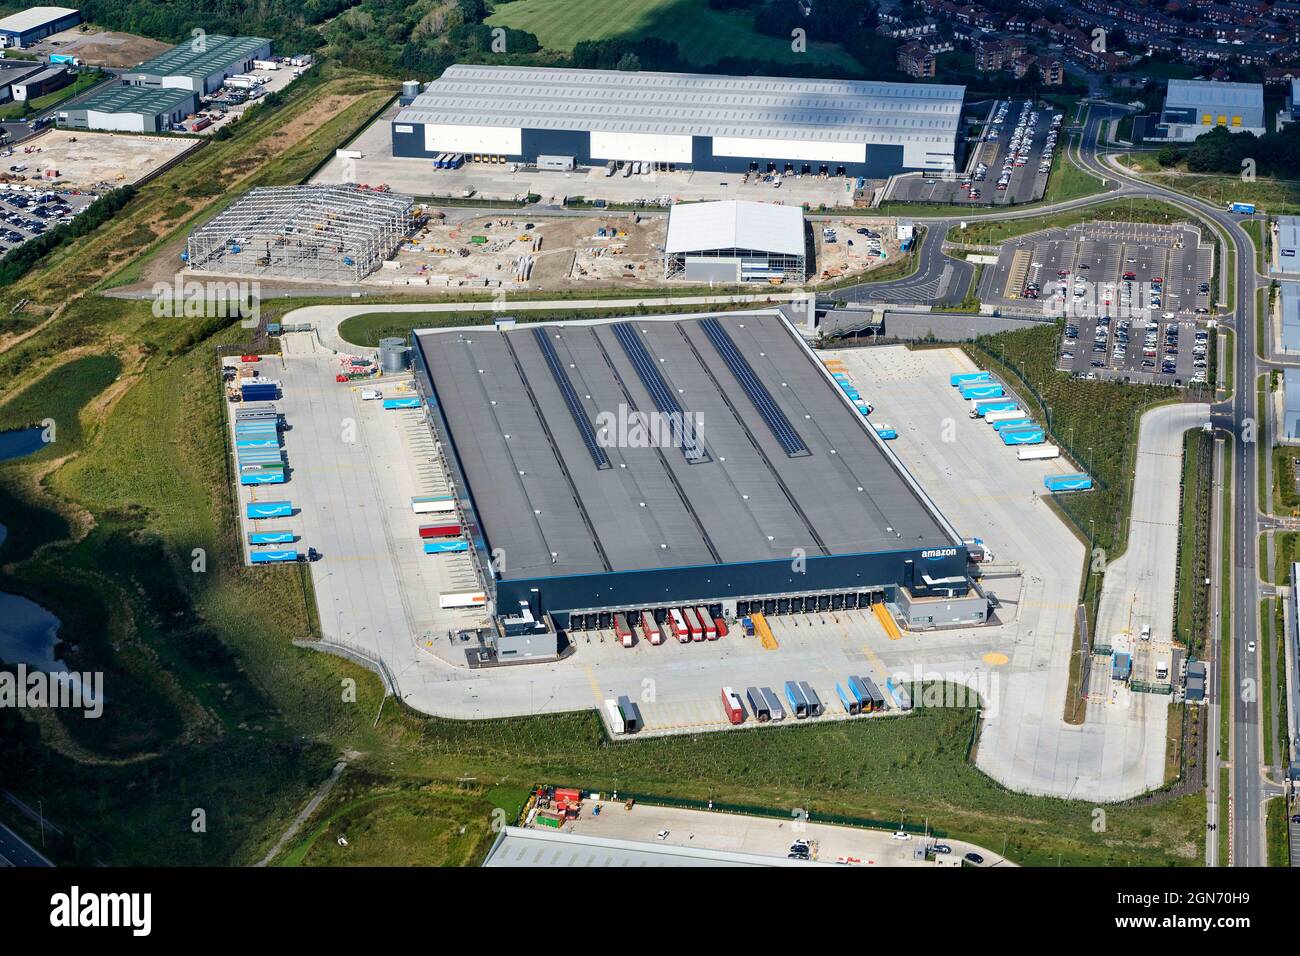 Un nouvel entrepôt de distribution Amazon à Leeds, dans le West Yorkshire, dans le nord de l'Angleterre, a été tiré des airs Banque D'Images